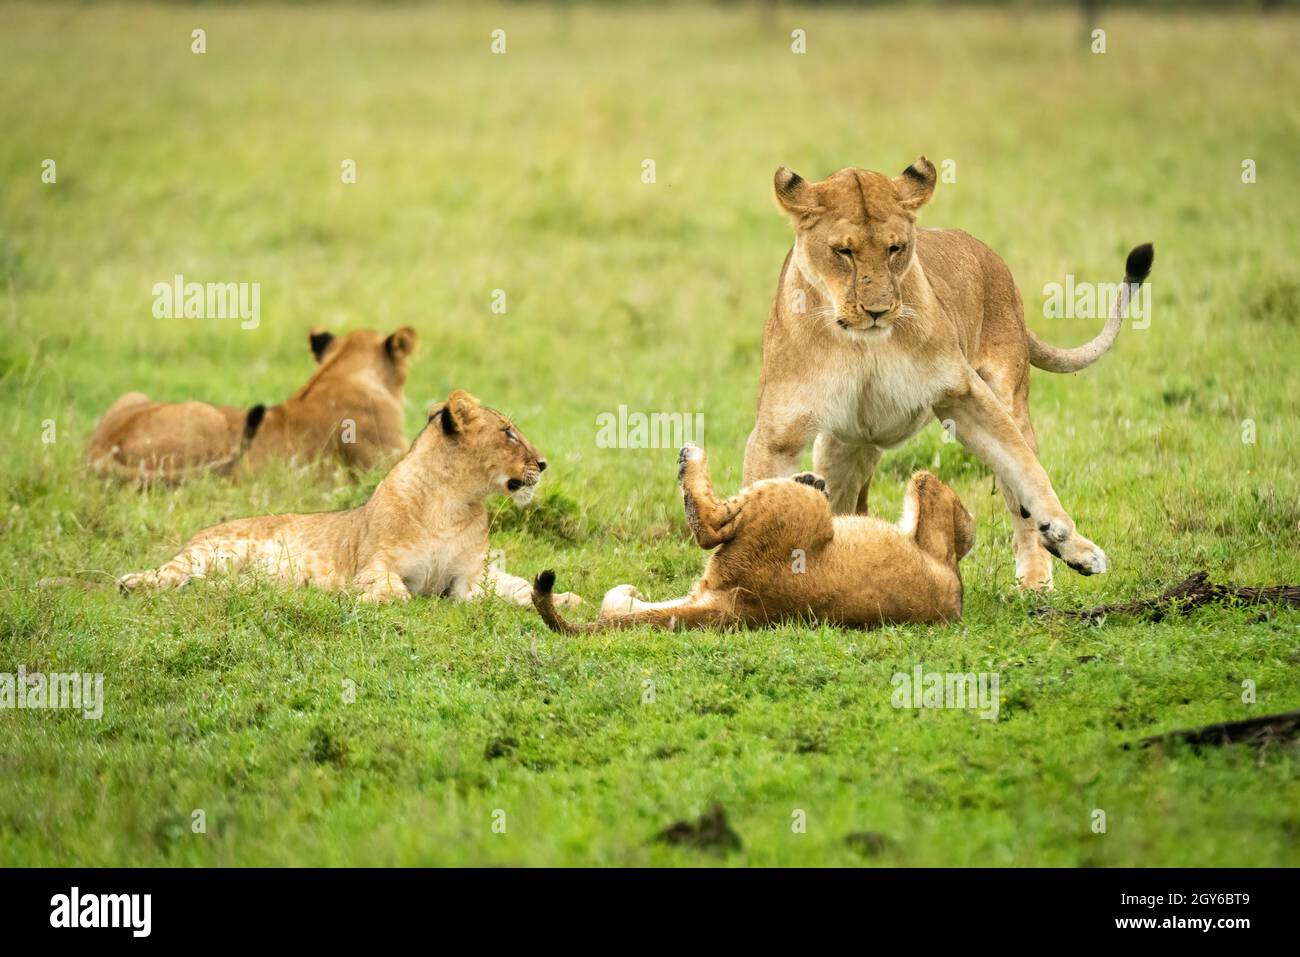 La leona juega peleando con el cachorro cerca de otros Foto de stock